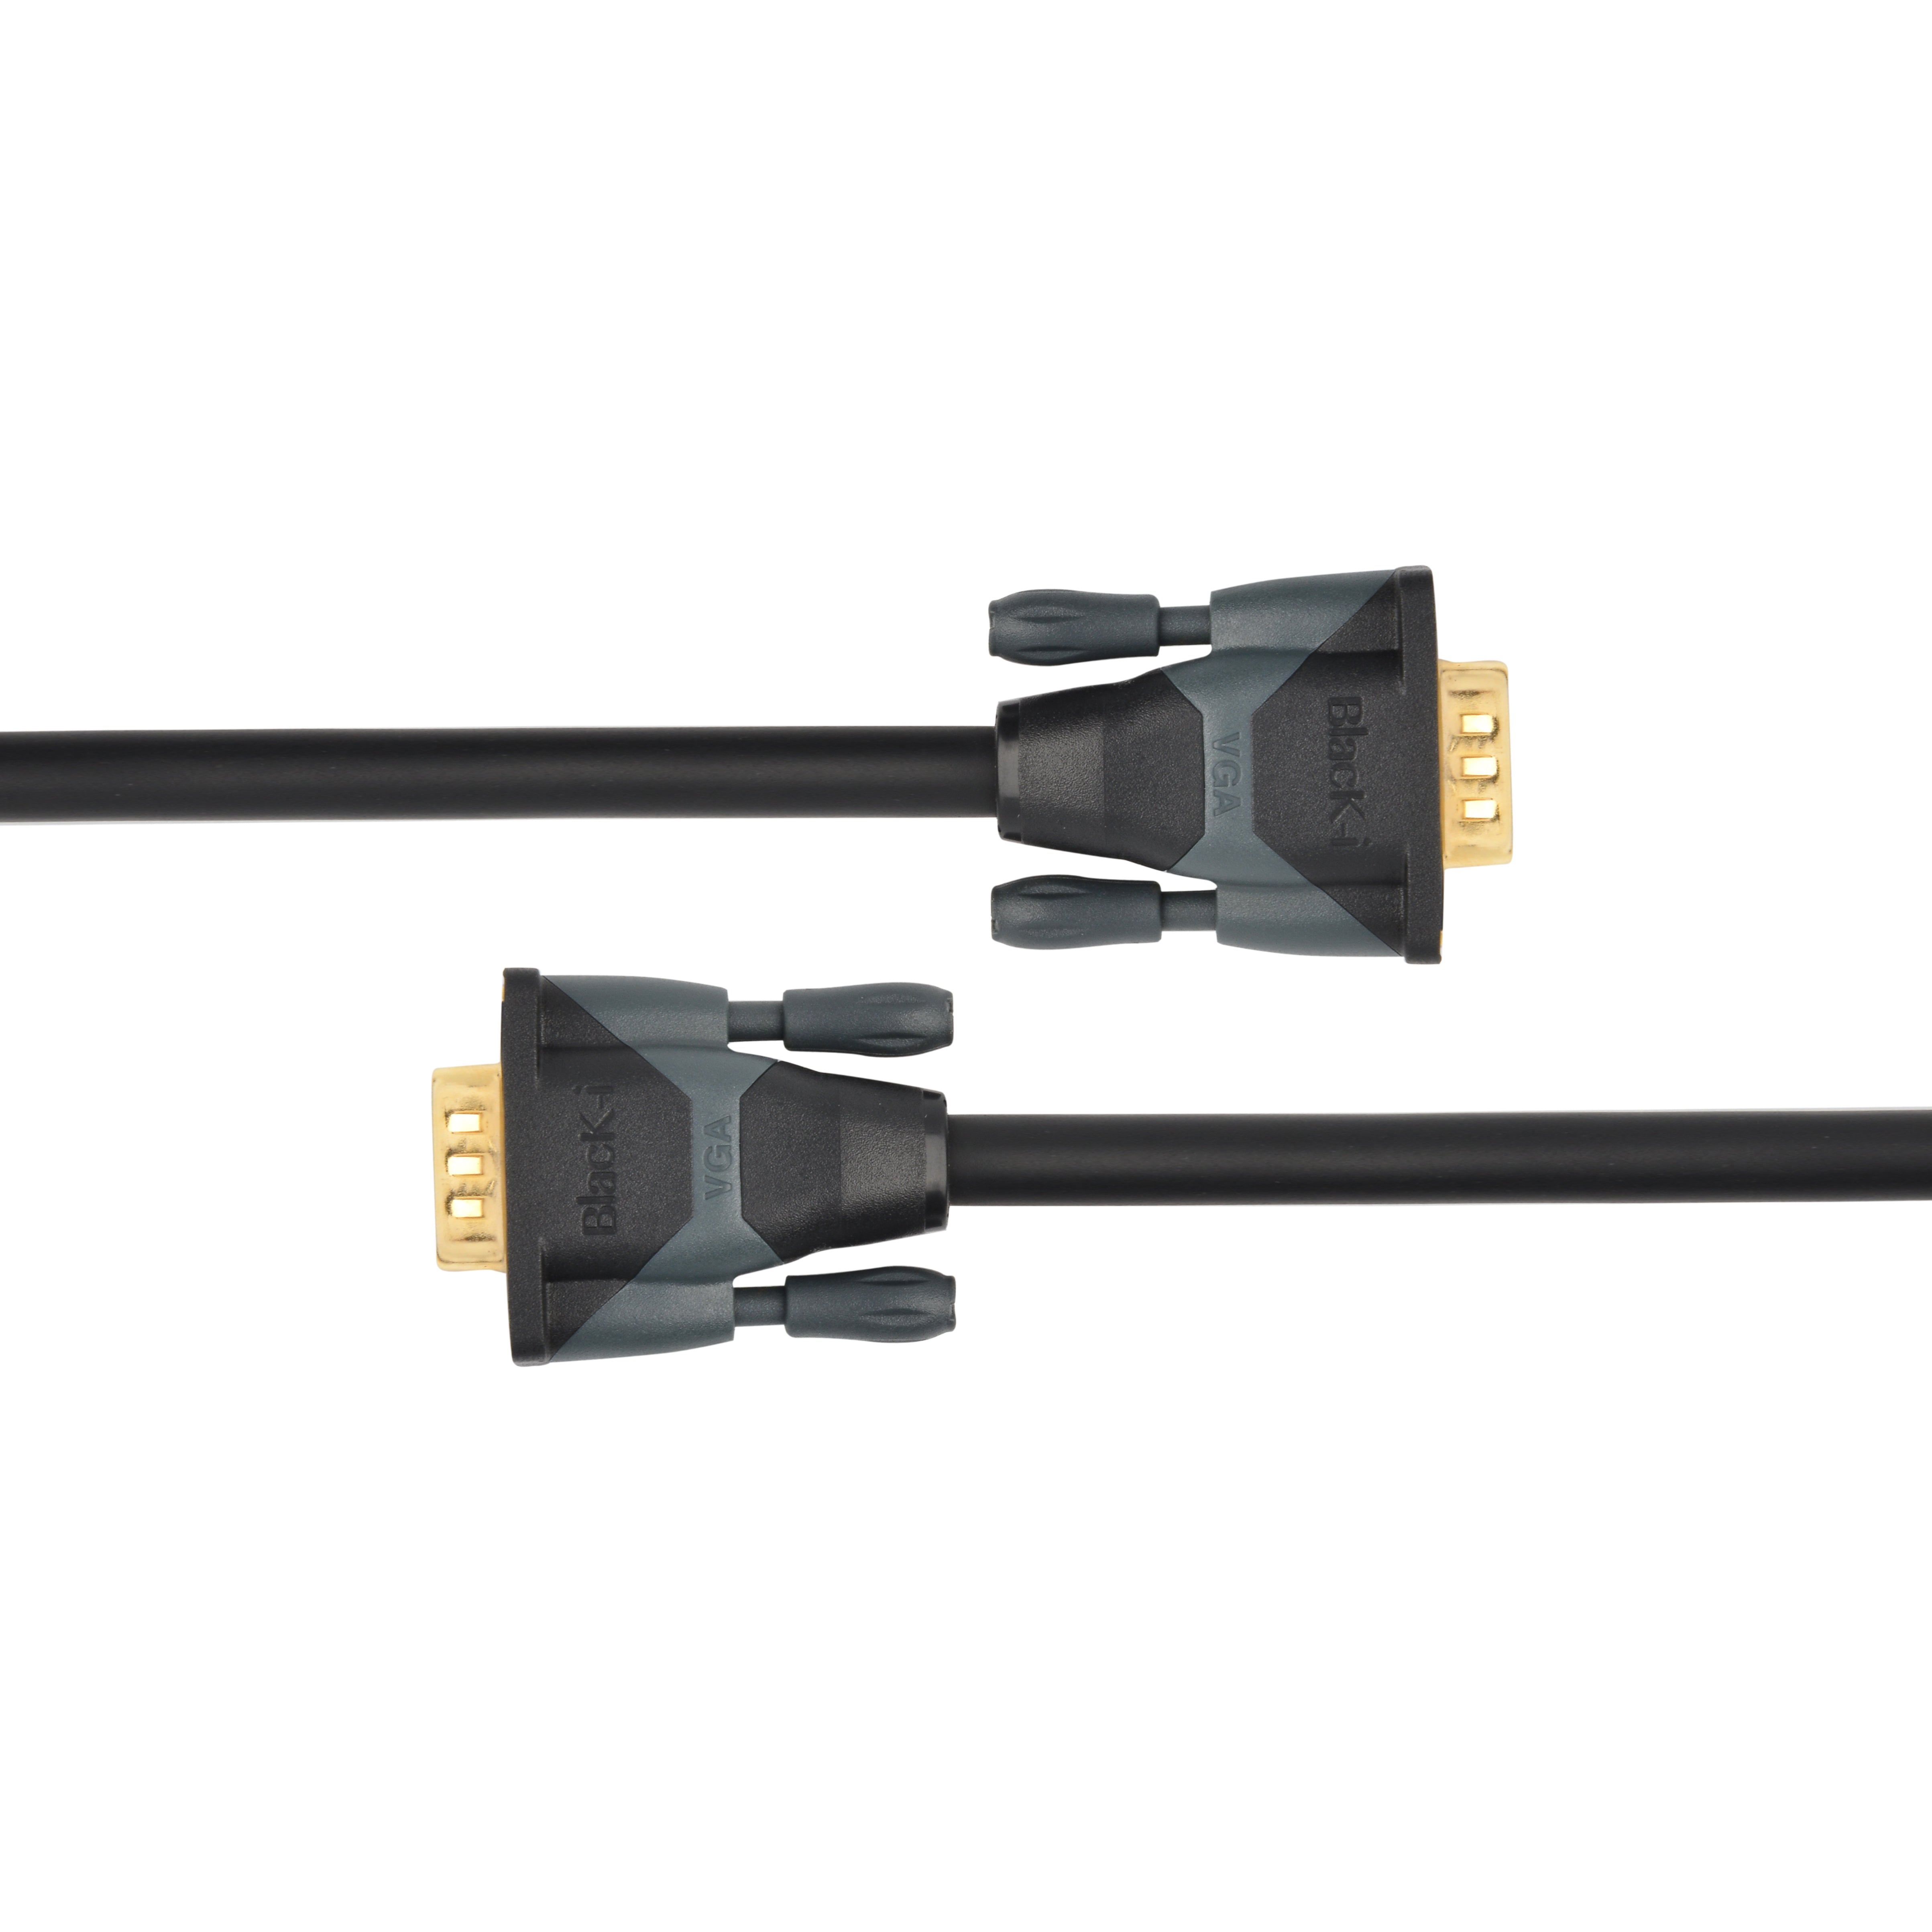 Black-i 15 Pin VGA Cable